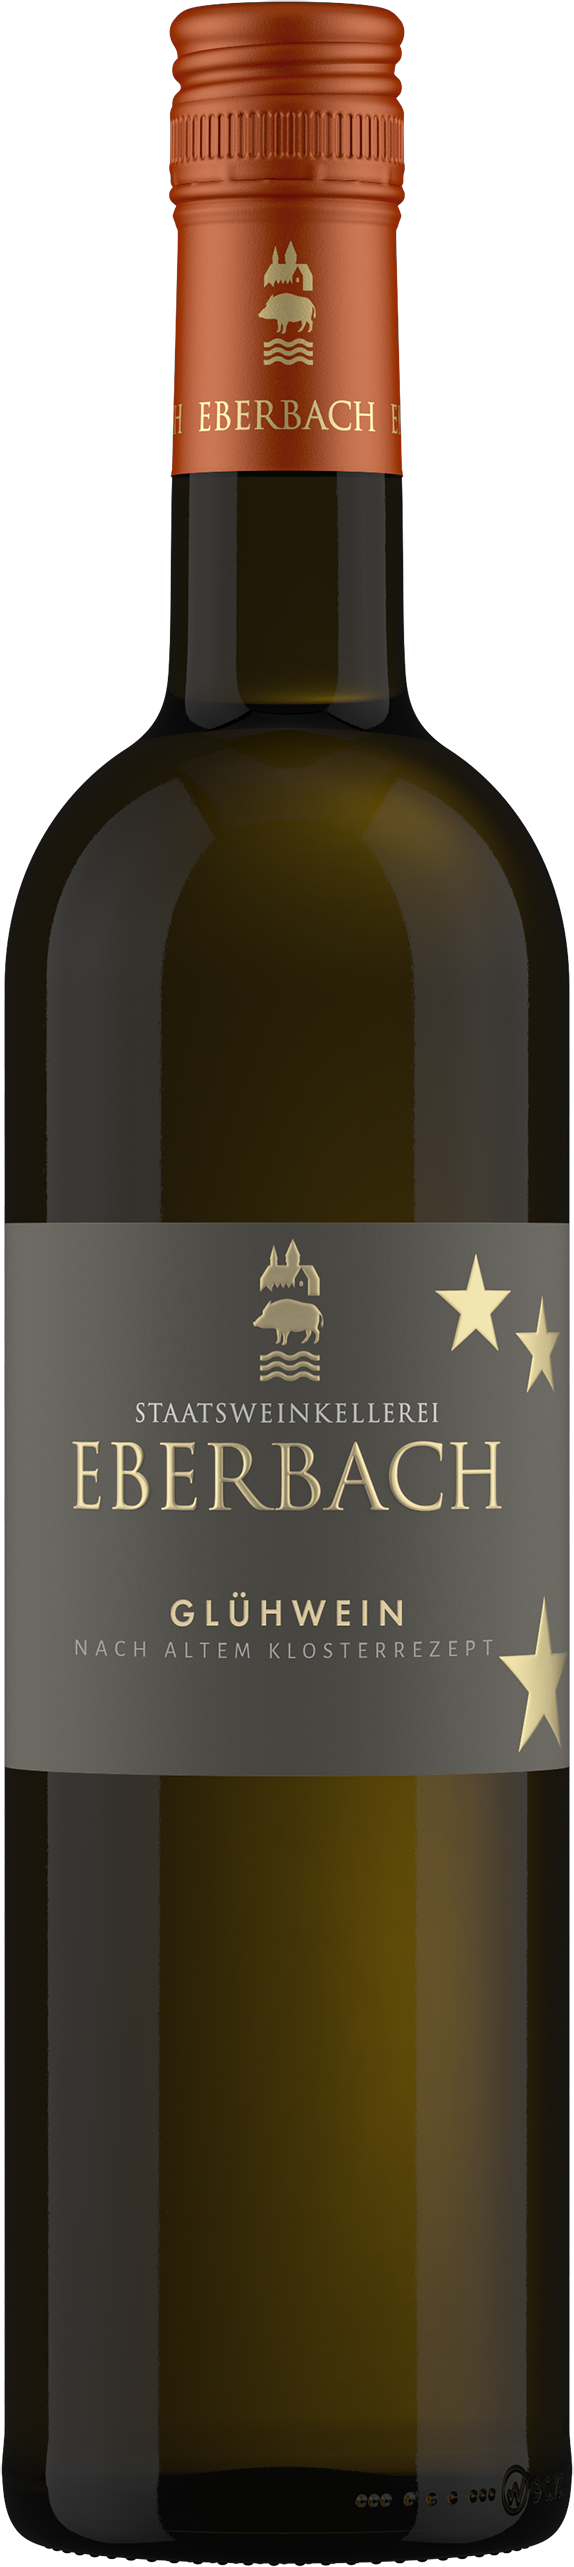 bestellen Kloster & Eberbach Wein kaufen online